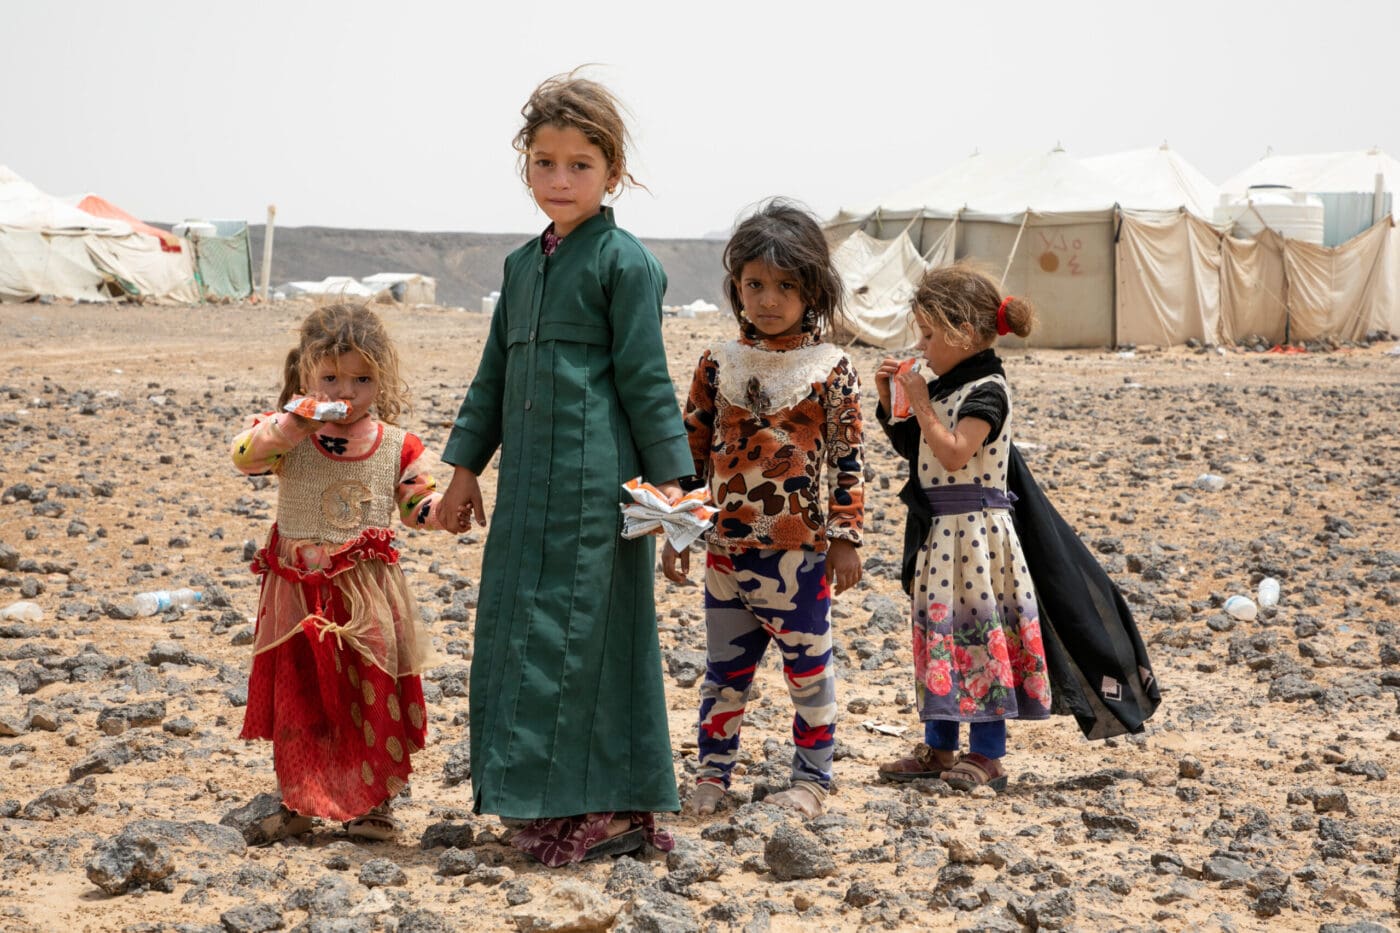 children standing in desert landscape